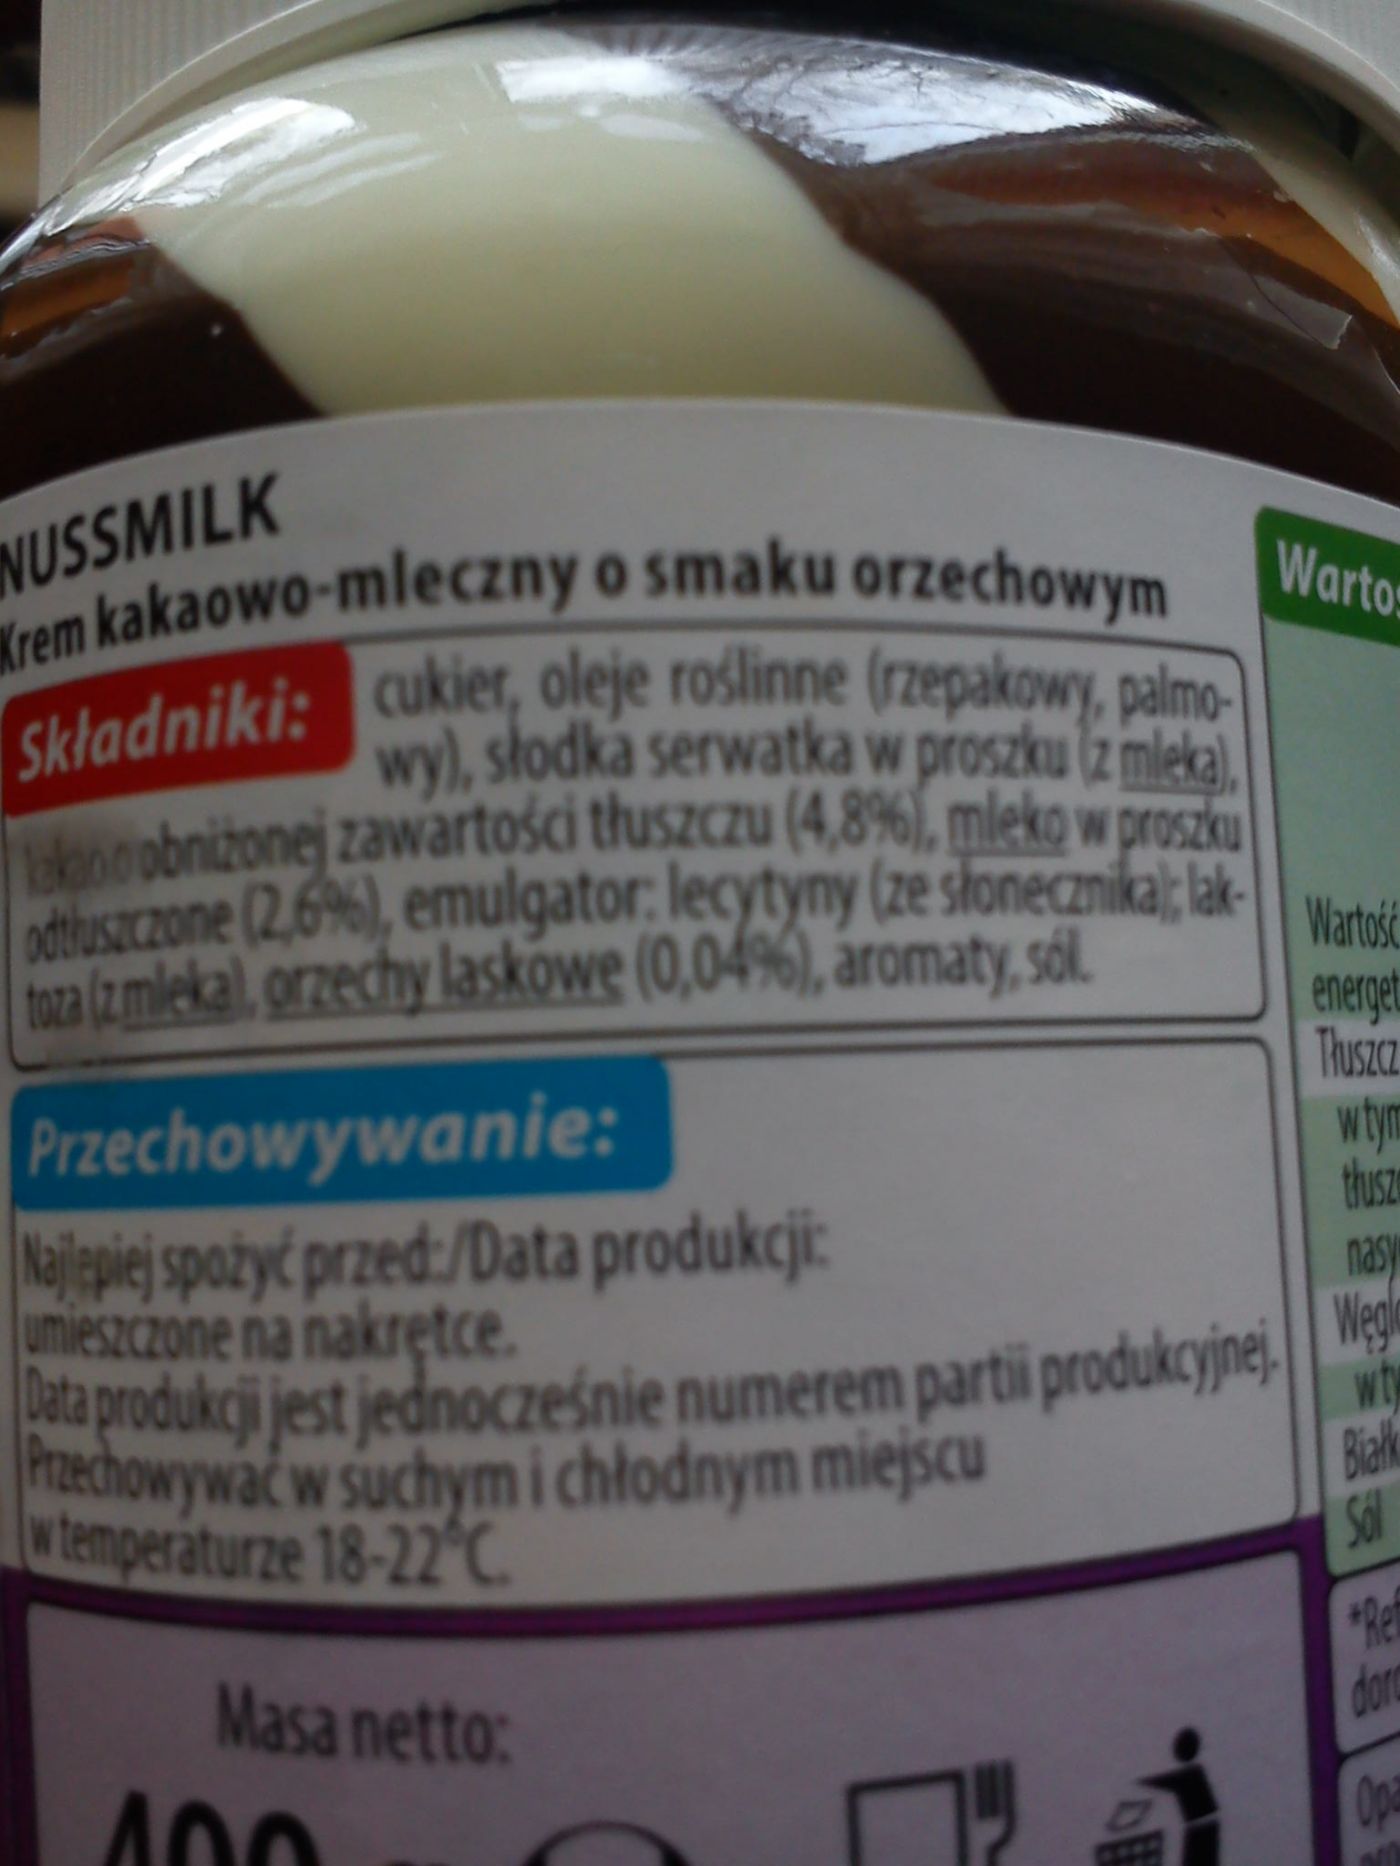 Krem kakaowo-mleczny o smaku orzechowym NussMilk biedronka